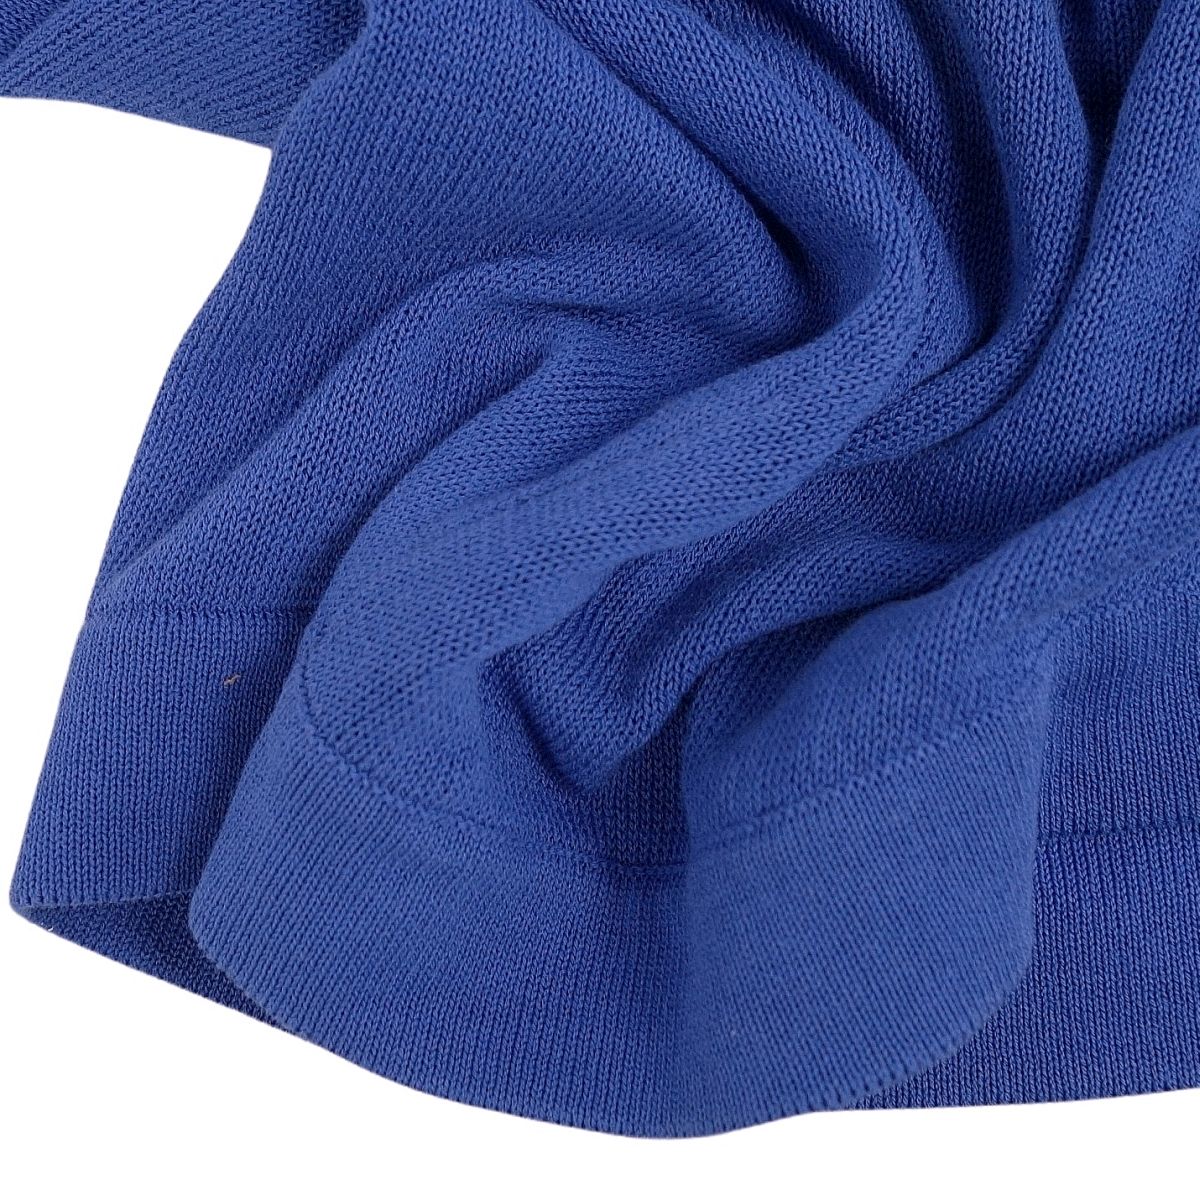 Bottega Veneta Bottega Veneta s Cardigan Bolero French Sleep Cotton Tops  40 (M equivalent) Blue Blue Bottega Veneta Nits